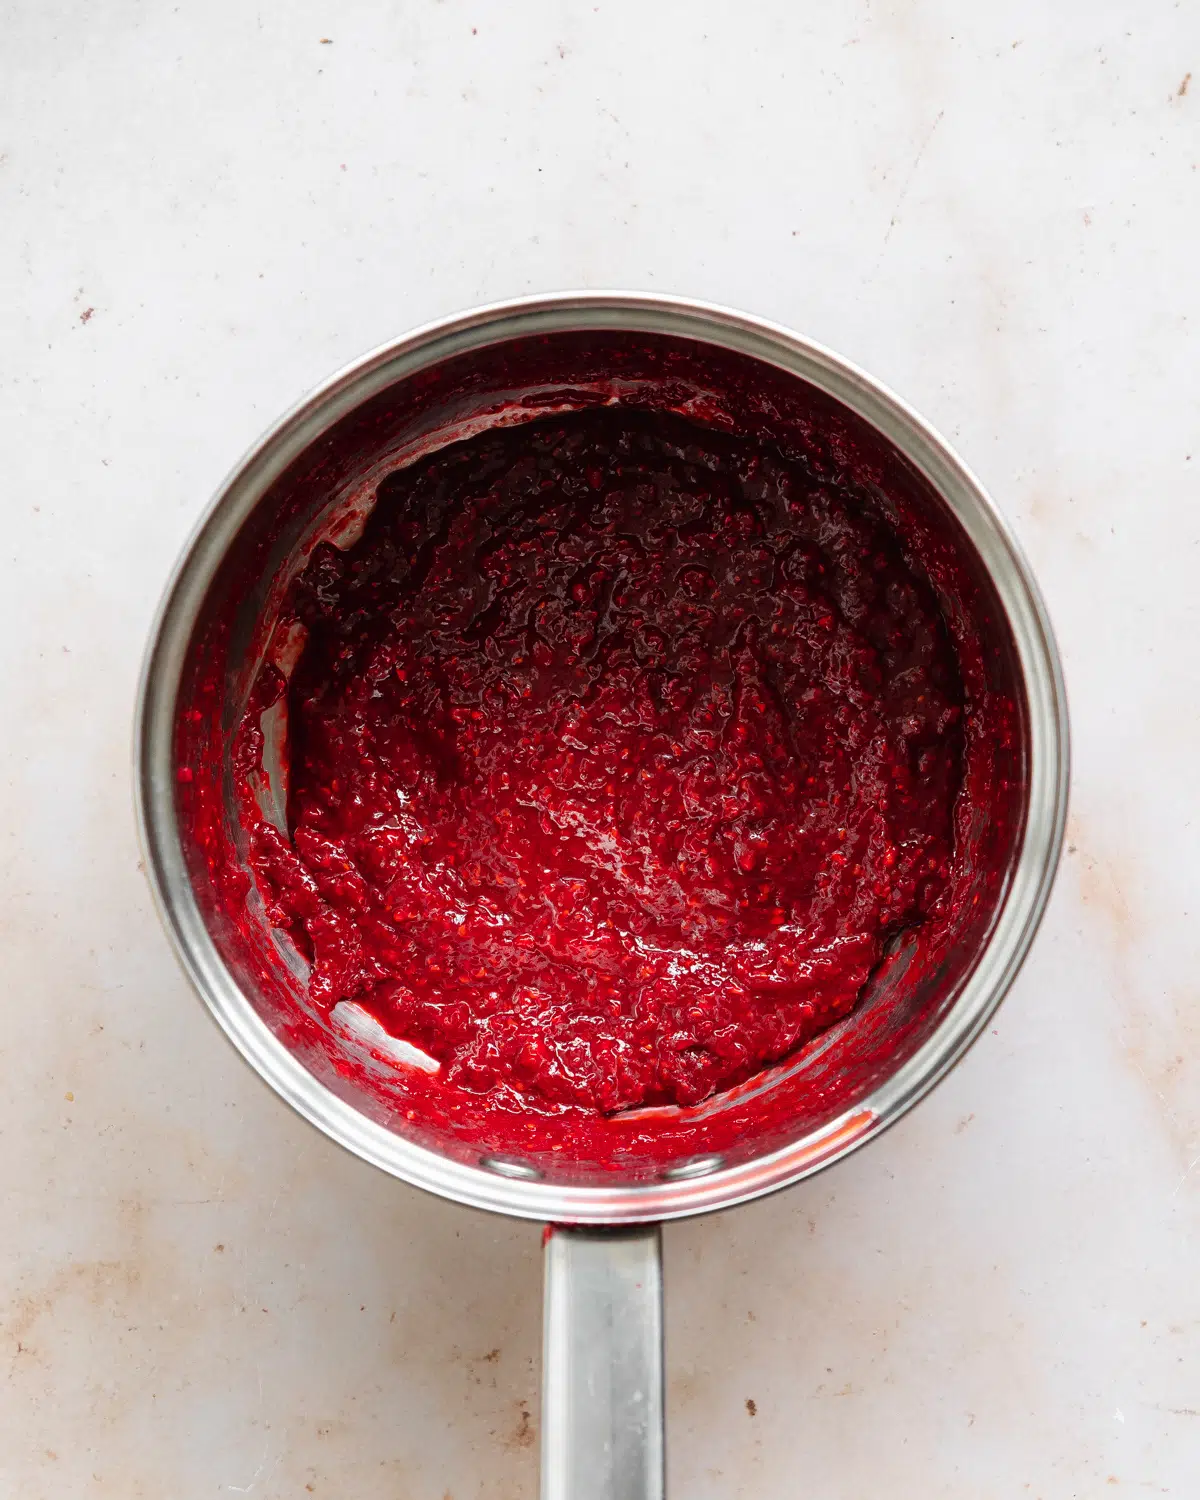 berry jam in a saucepan.